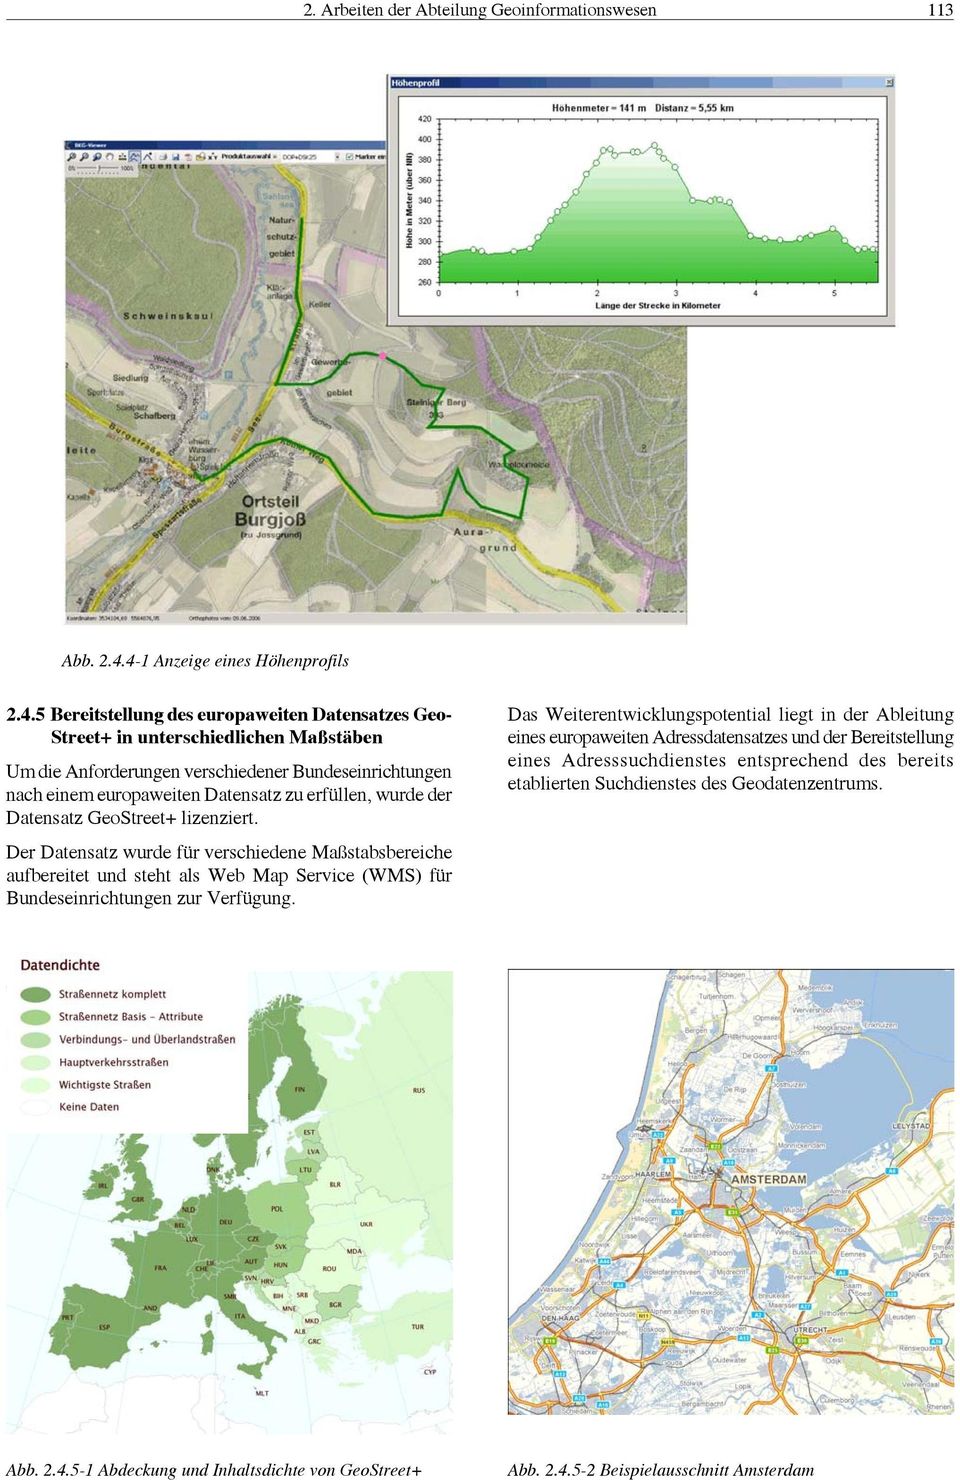 europaweiten Datensatz zu erfüllen, wurde der Datensatz GeoStreet+ lizenziert.